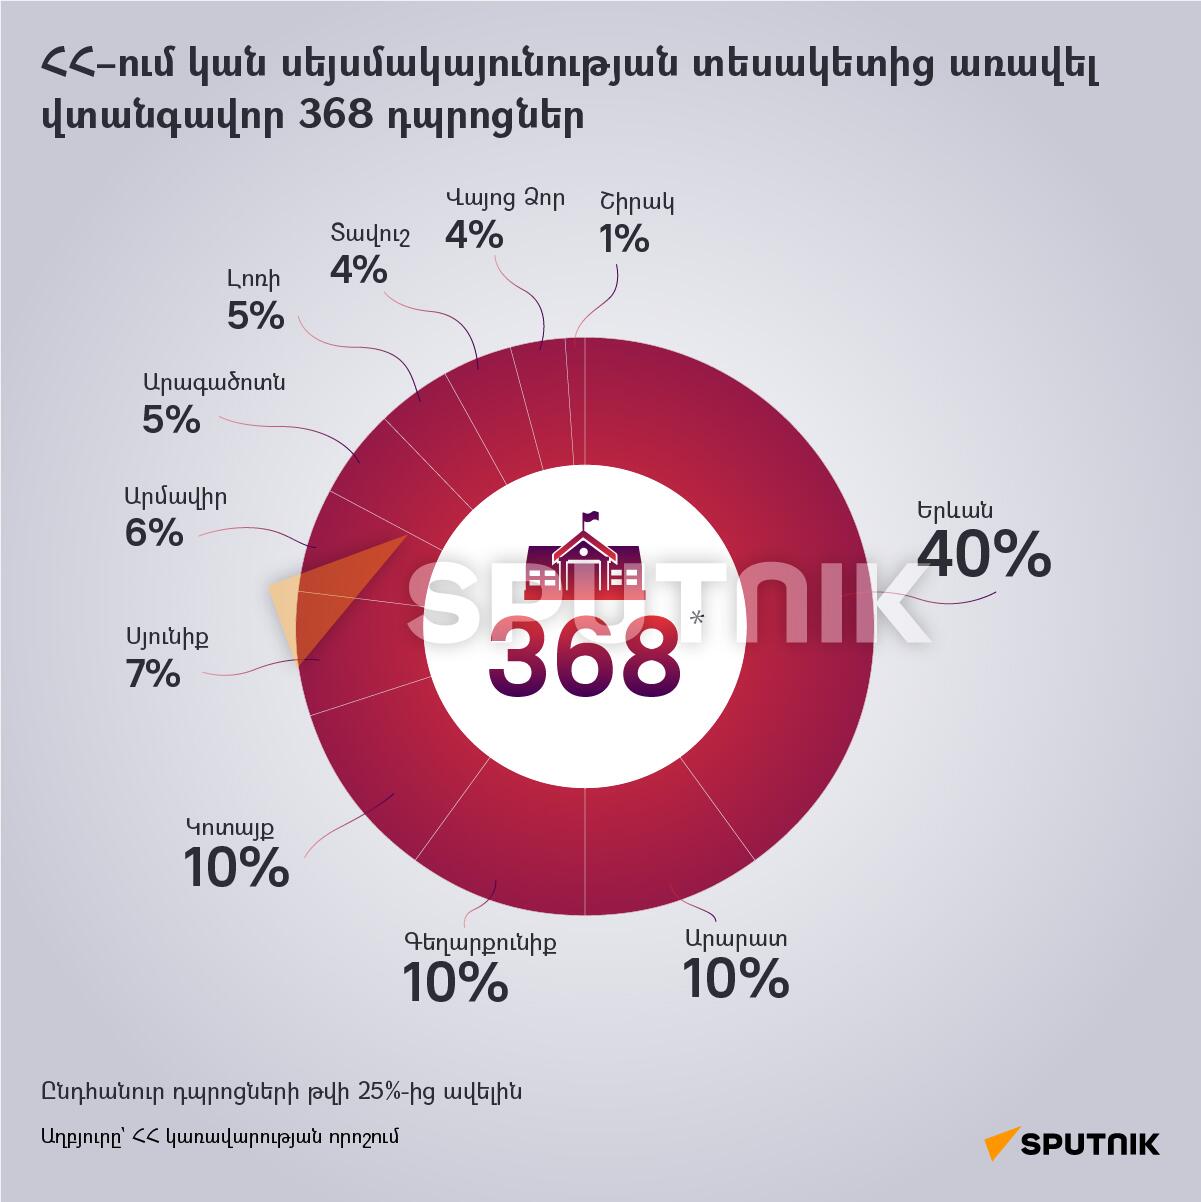 ՀՀ–ում կան սեյսմակայունության տեսակետից առավել վտանգավոր 368 դպրոցներ - Sputnik Արմենիա